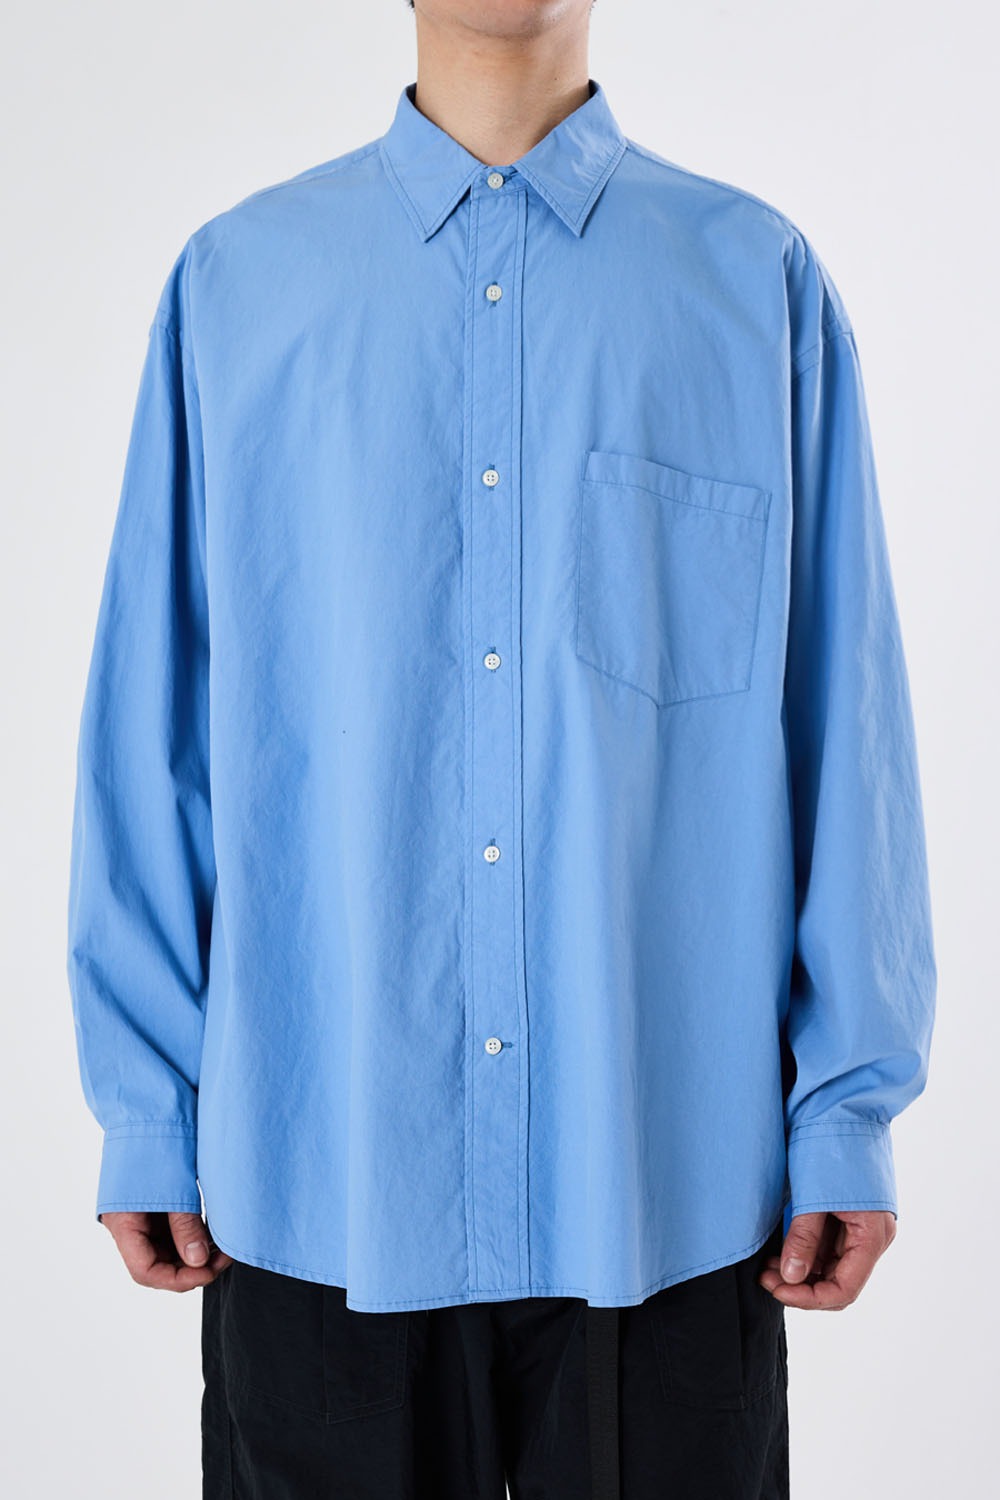 Uniform Shirt-Cornflower Blue